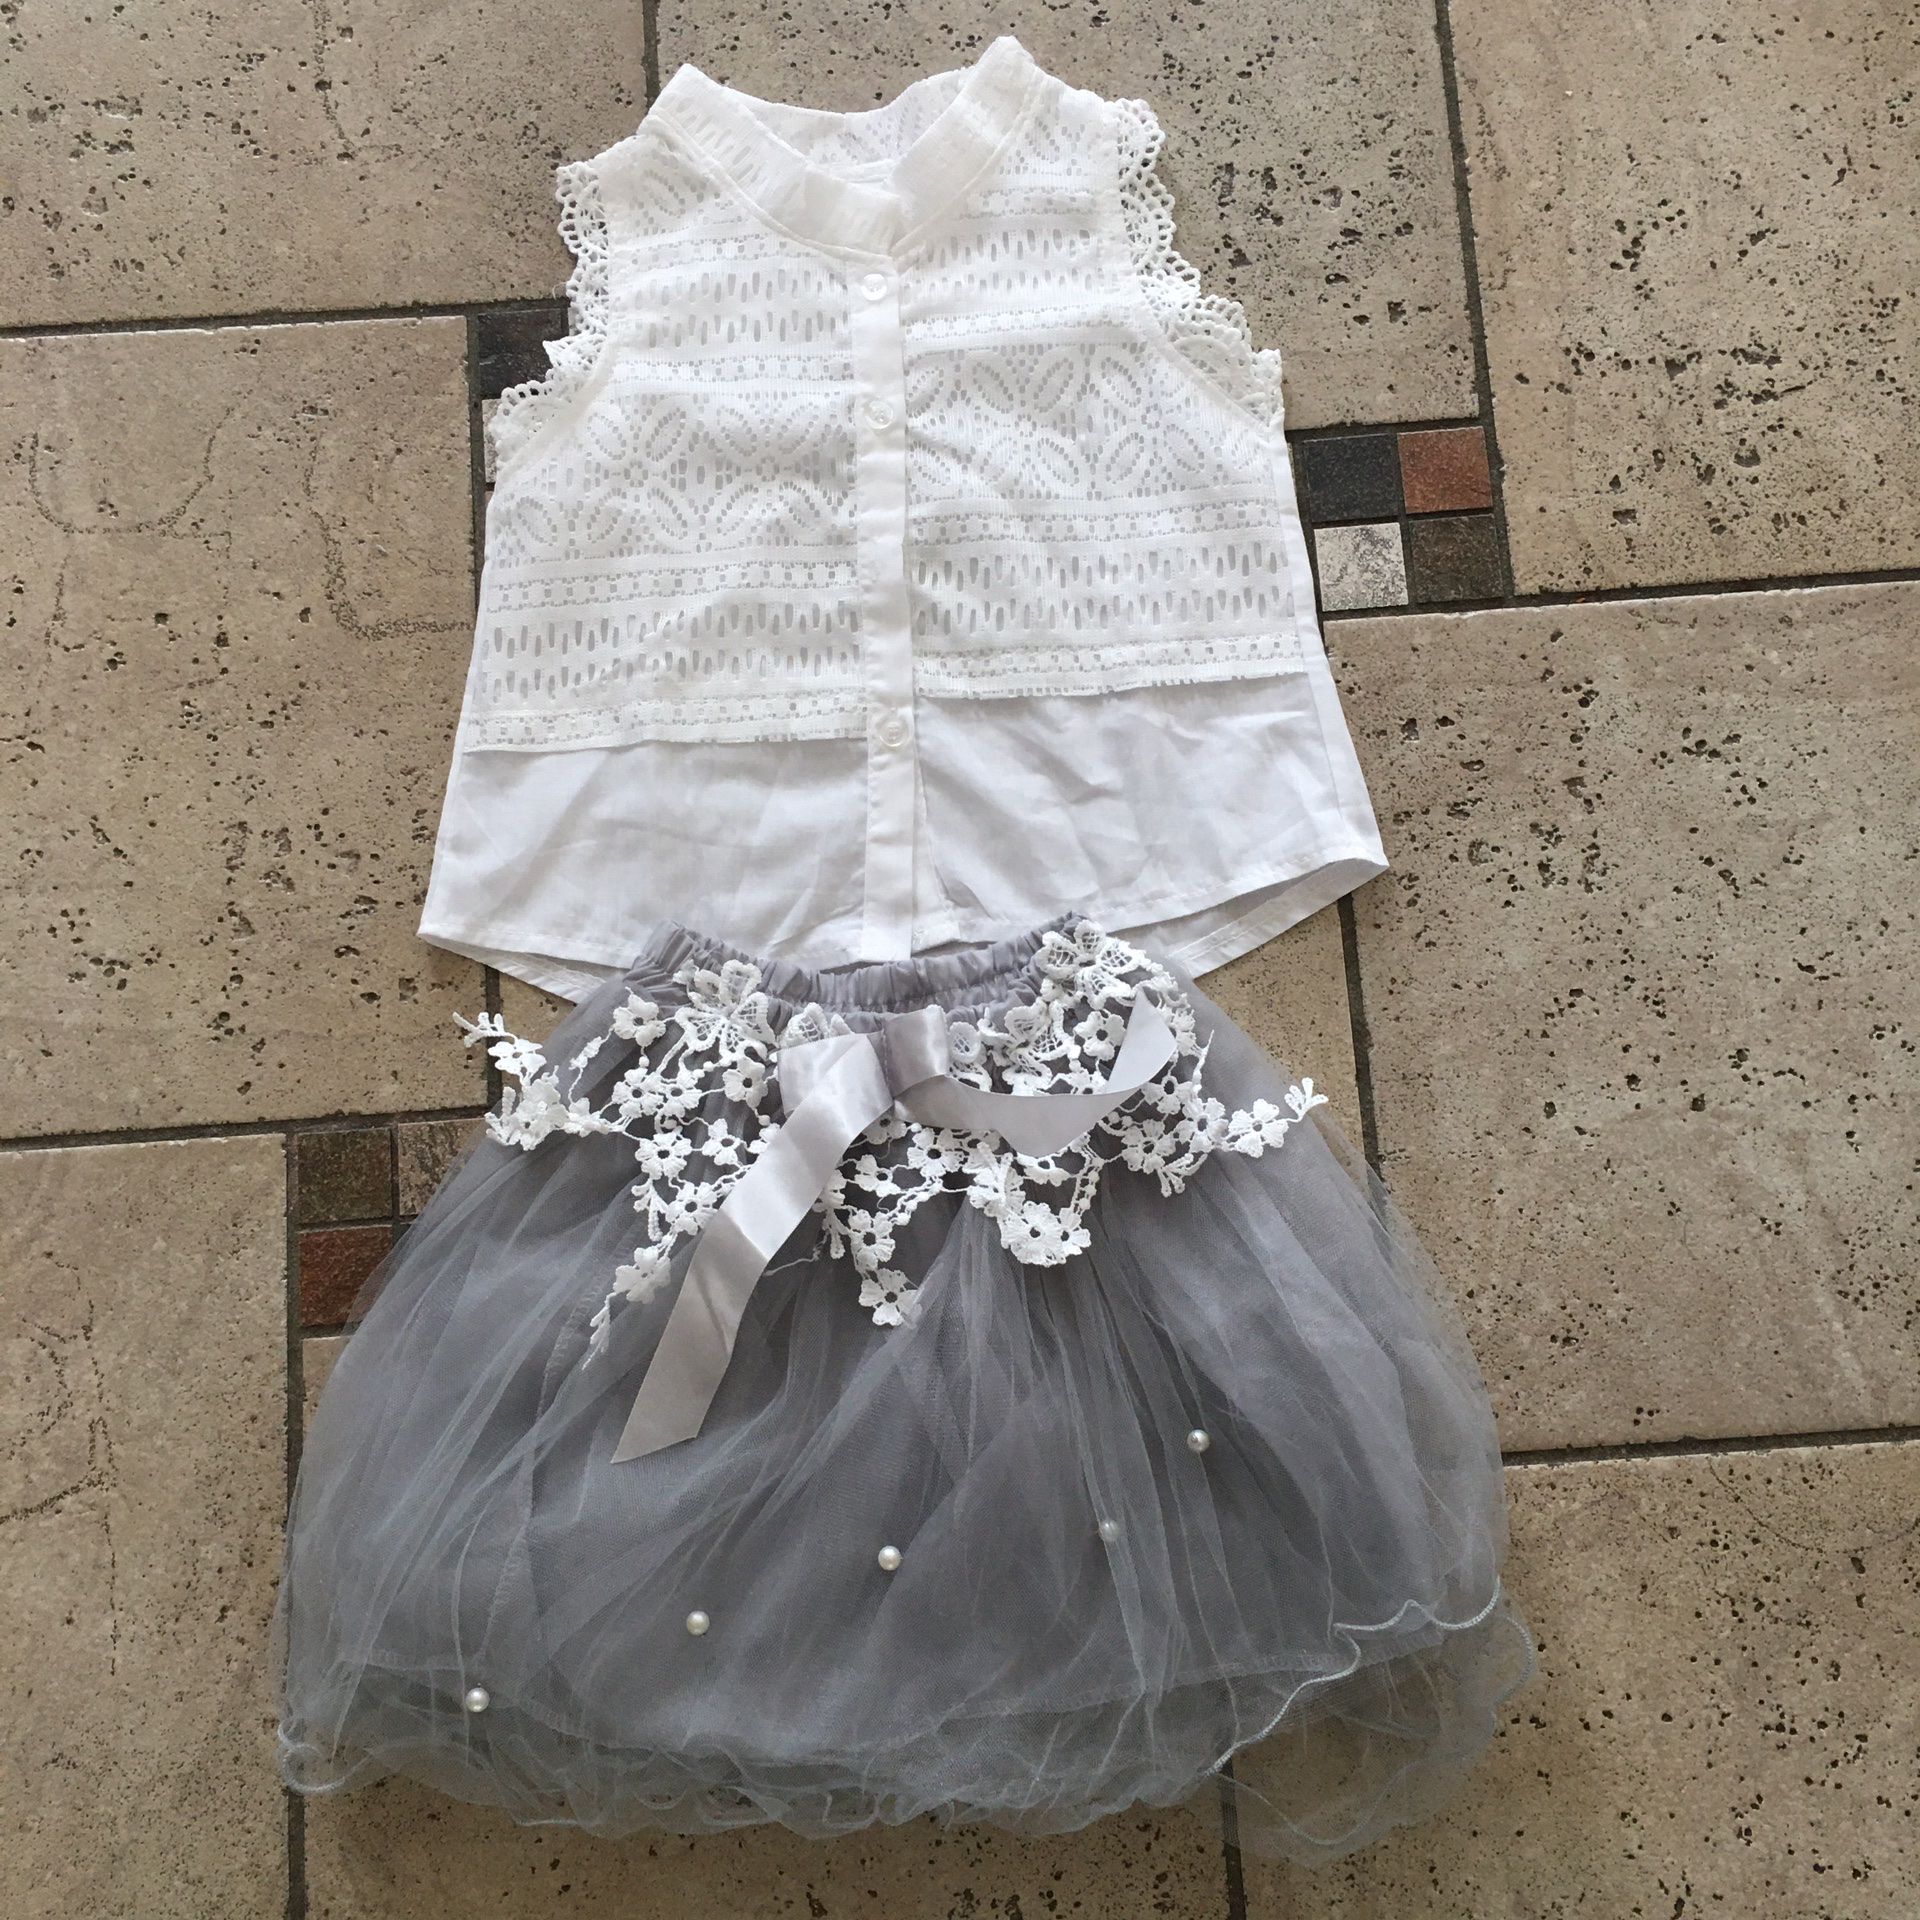 New lace top & tutu skirt 2 pcs outfit set size 4T